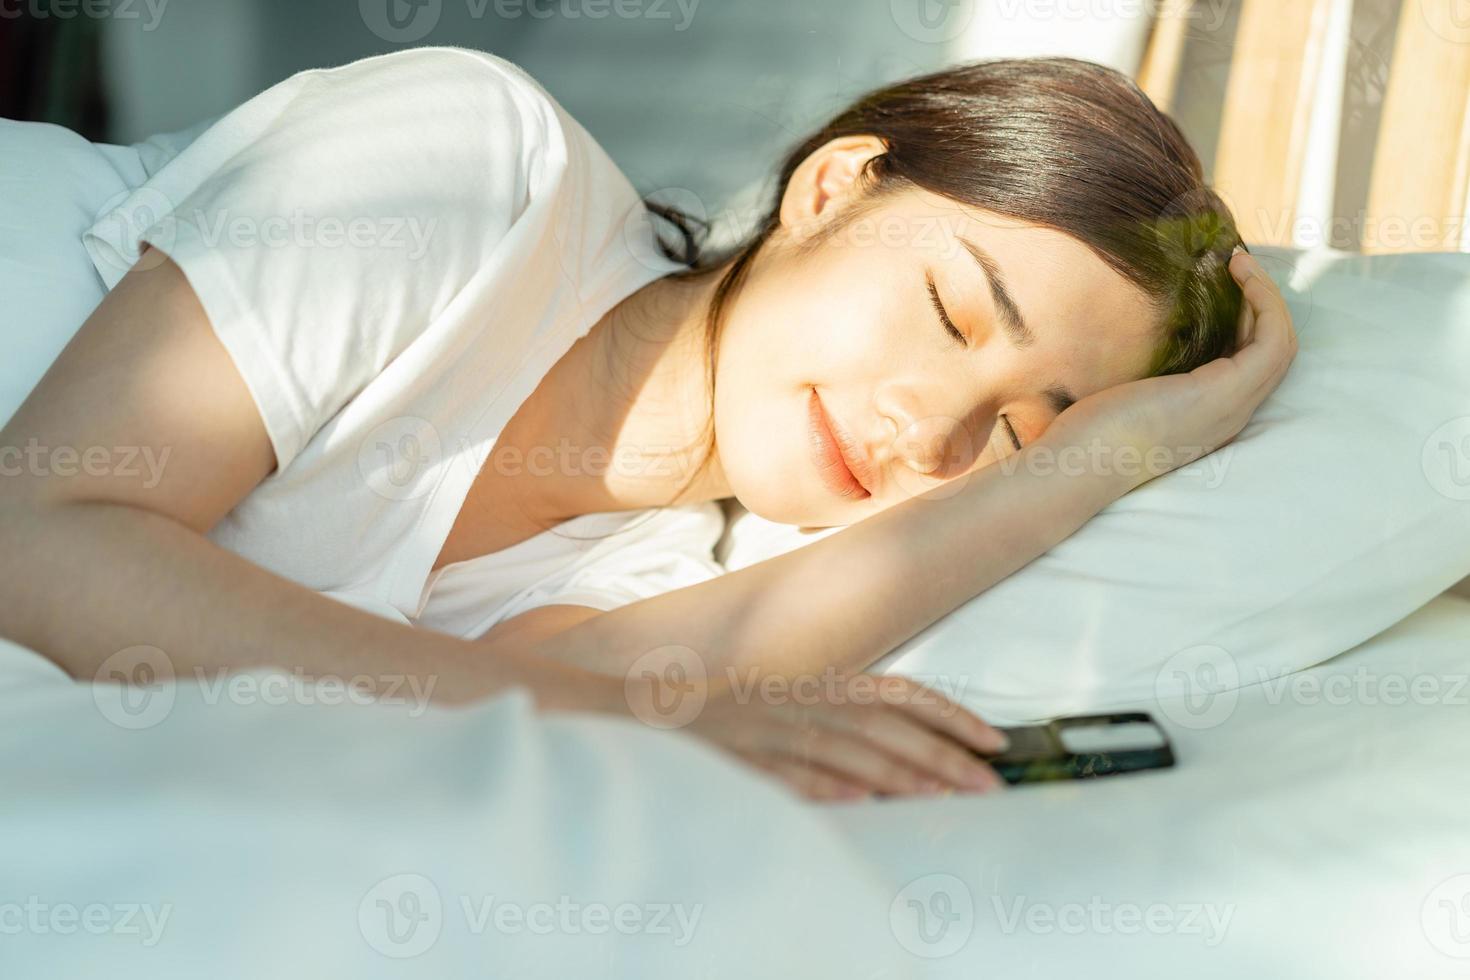 la belle femme asiatique dormait après midi avec son téléphone à côté d'elle photo